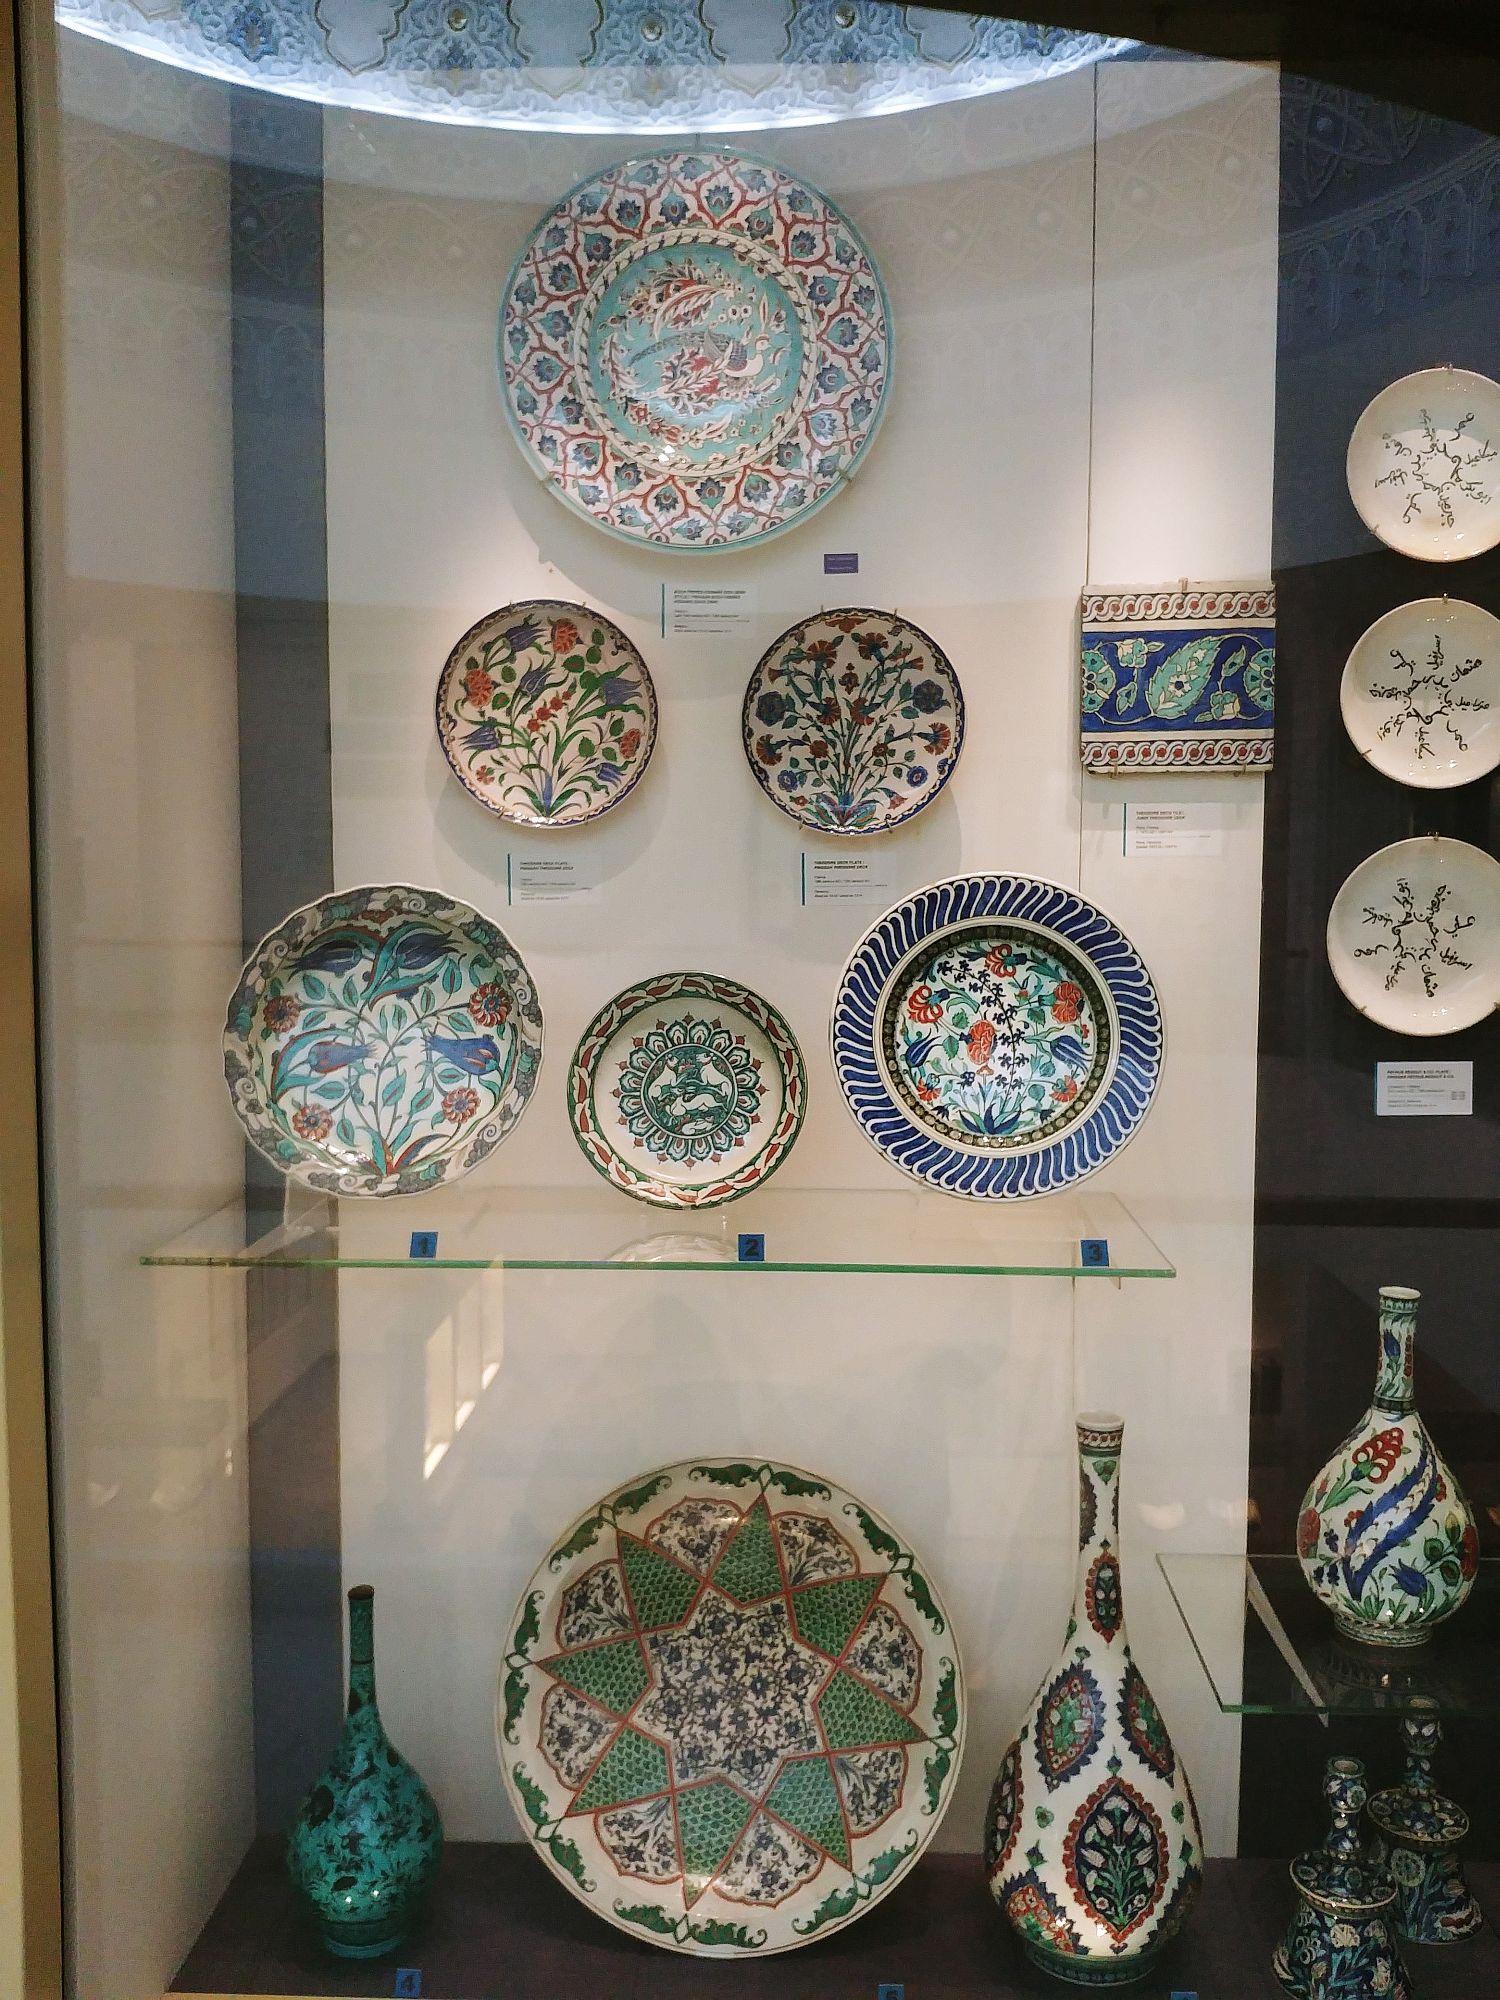 KL - Islamic Arts Museum - Ceramics